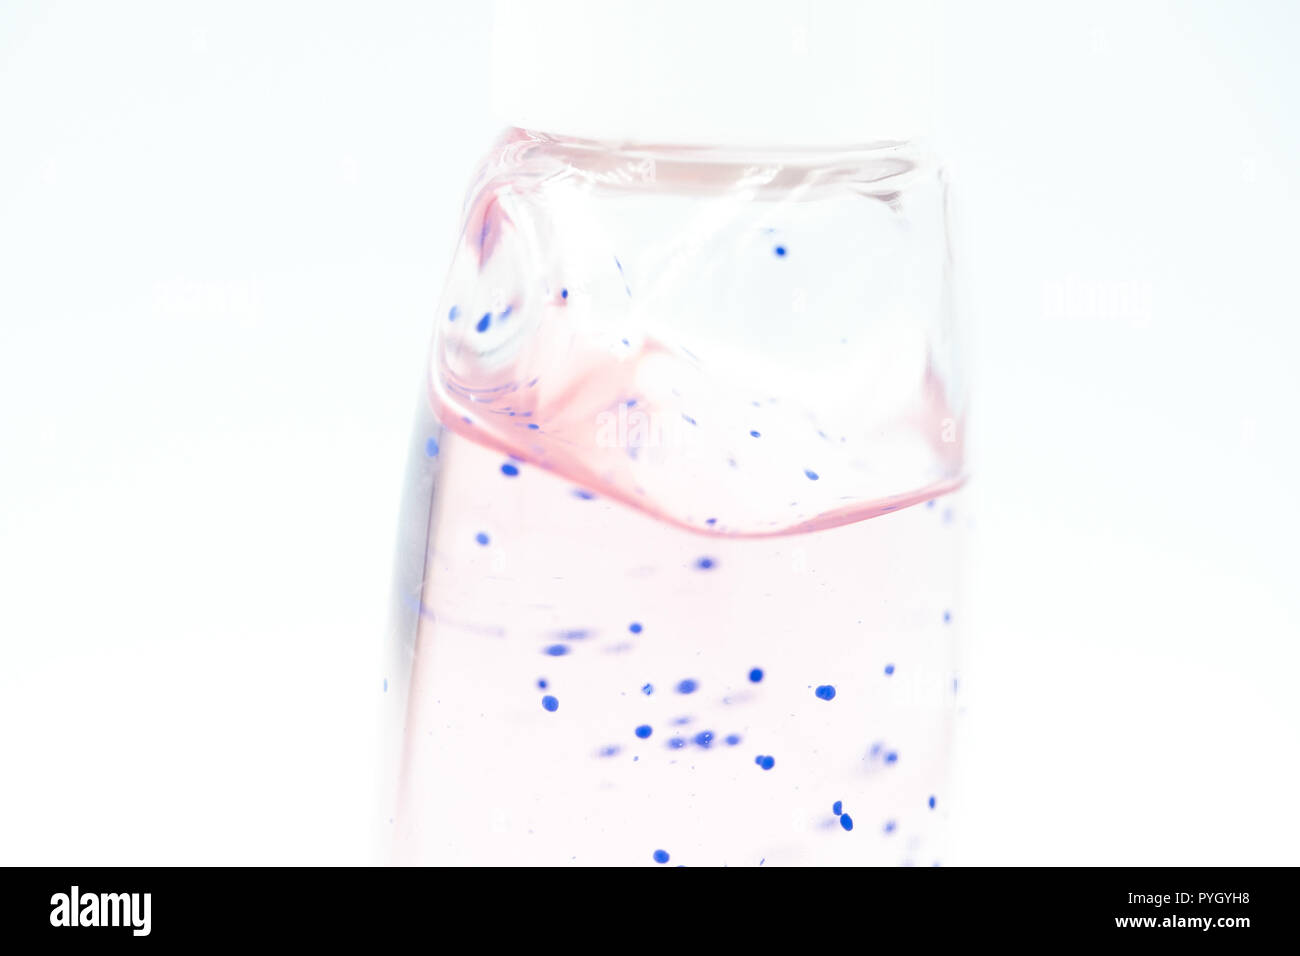 Umweltverschmutzung Konzept Bild, Body Scrub Gel mit Mikroperlen Stockfoto